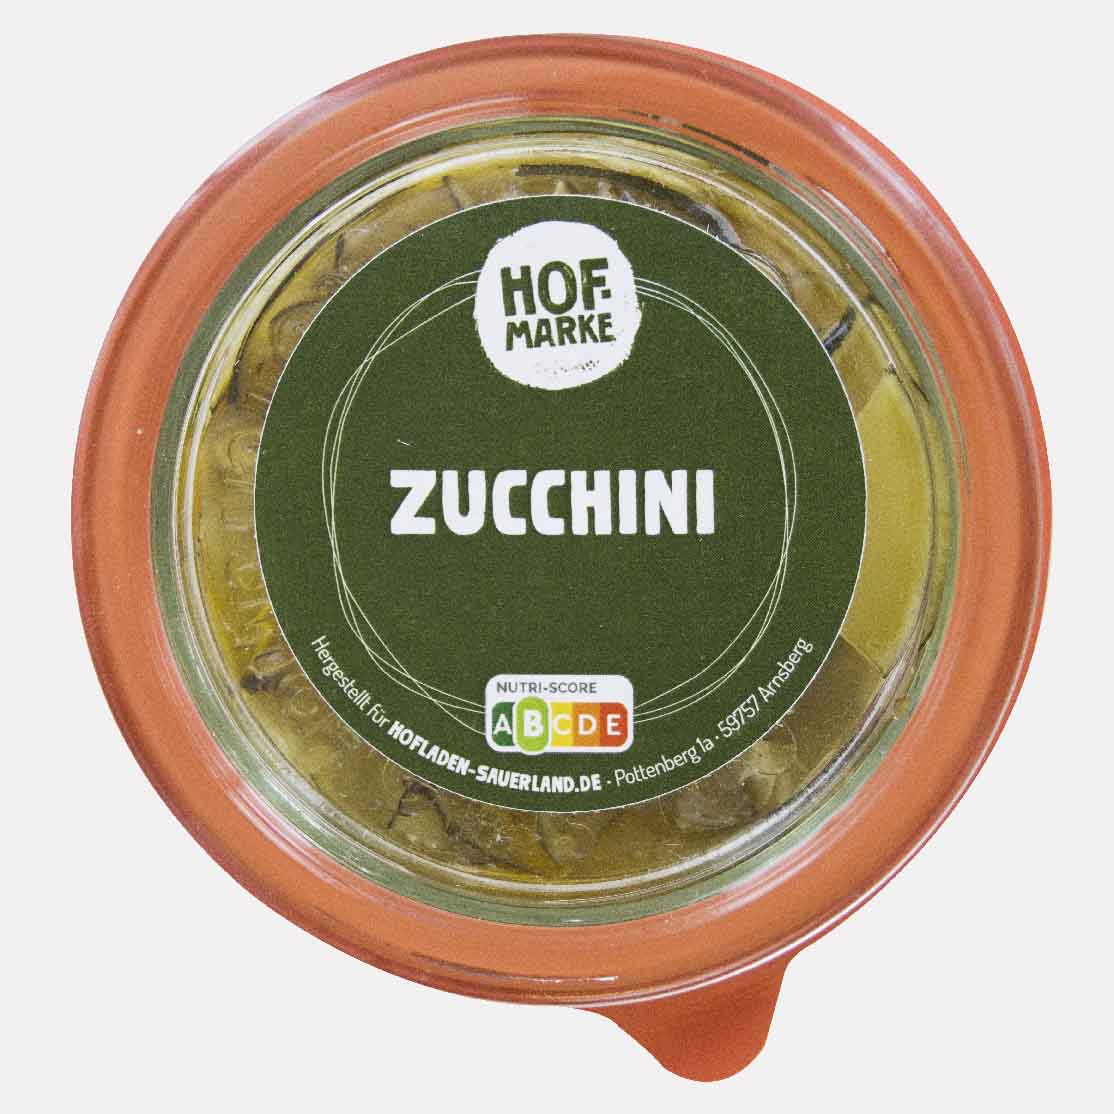 eingelegte Zucchini von unserer Hofmarke-zoom-mobil